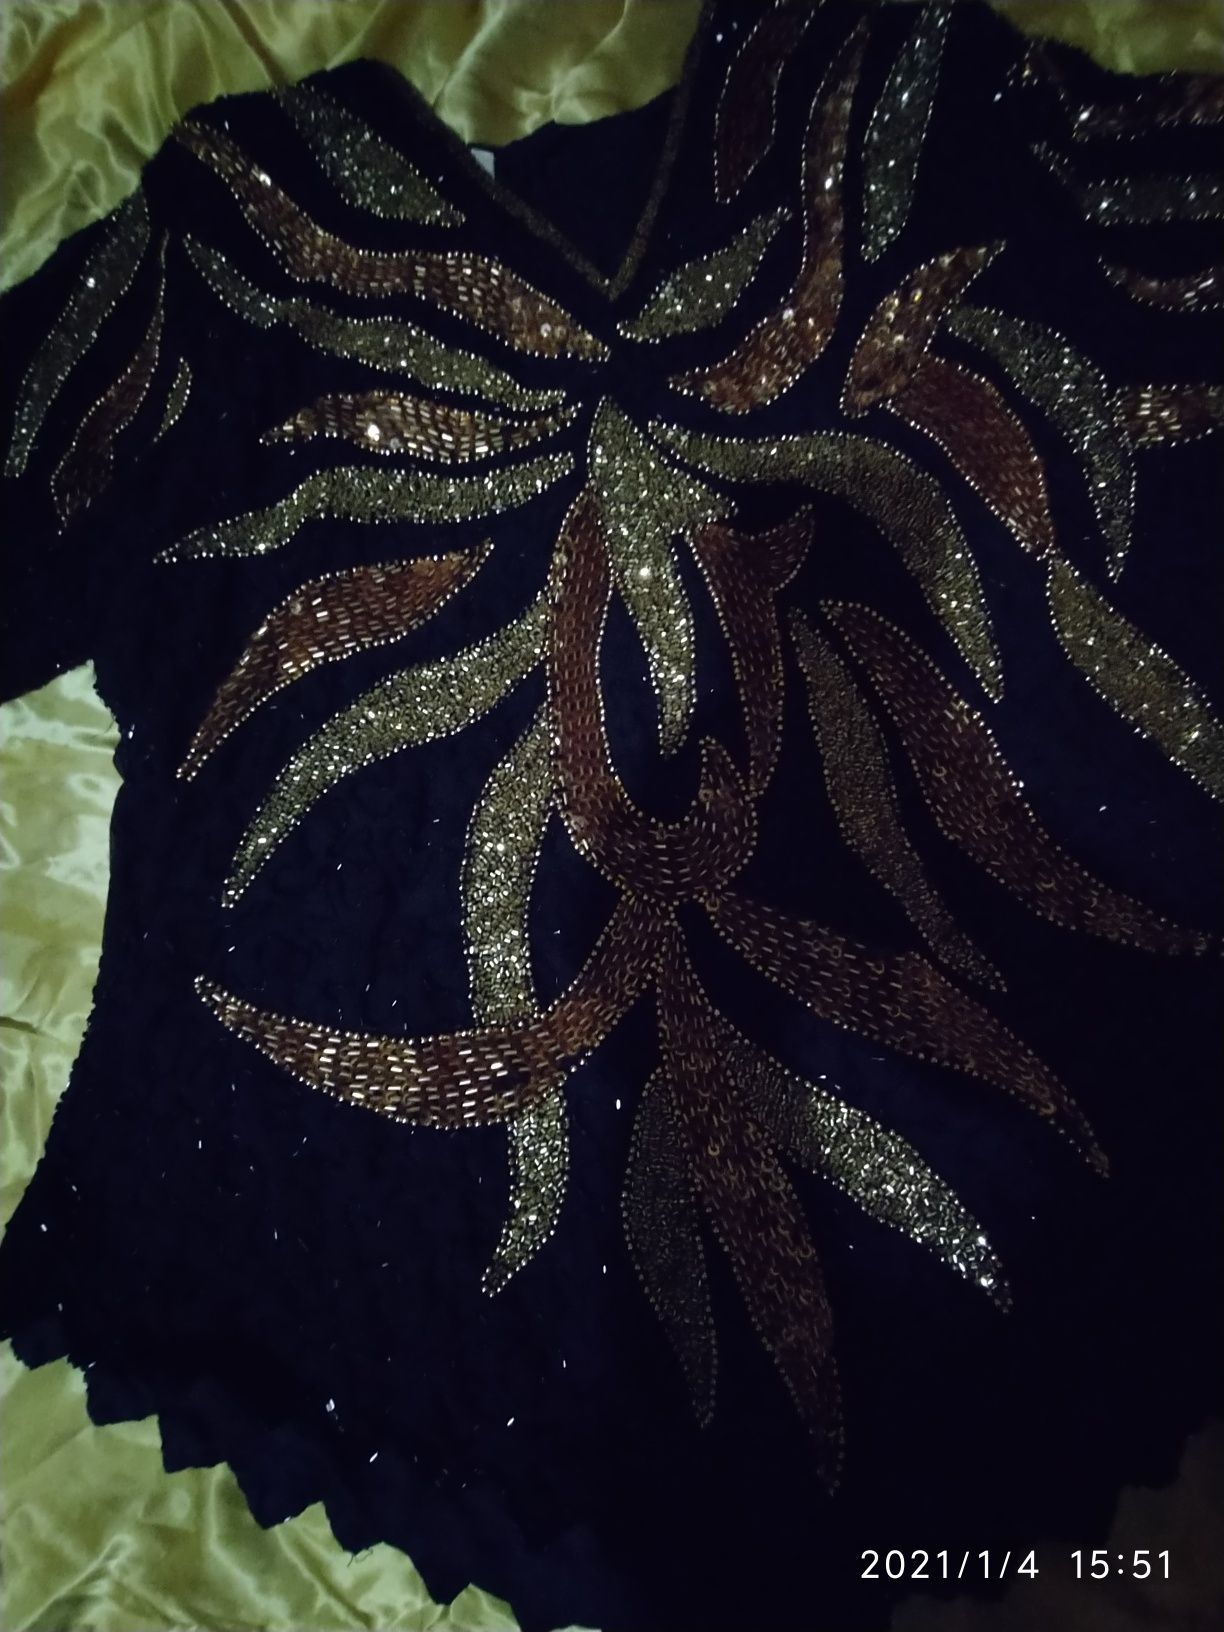 Праздничная нарядная сверкающая блузочка ручной работы,вышита бисером